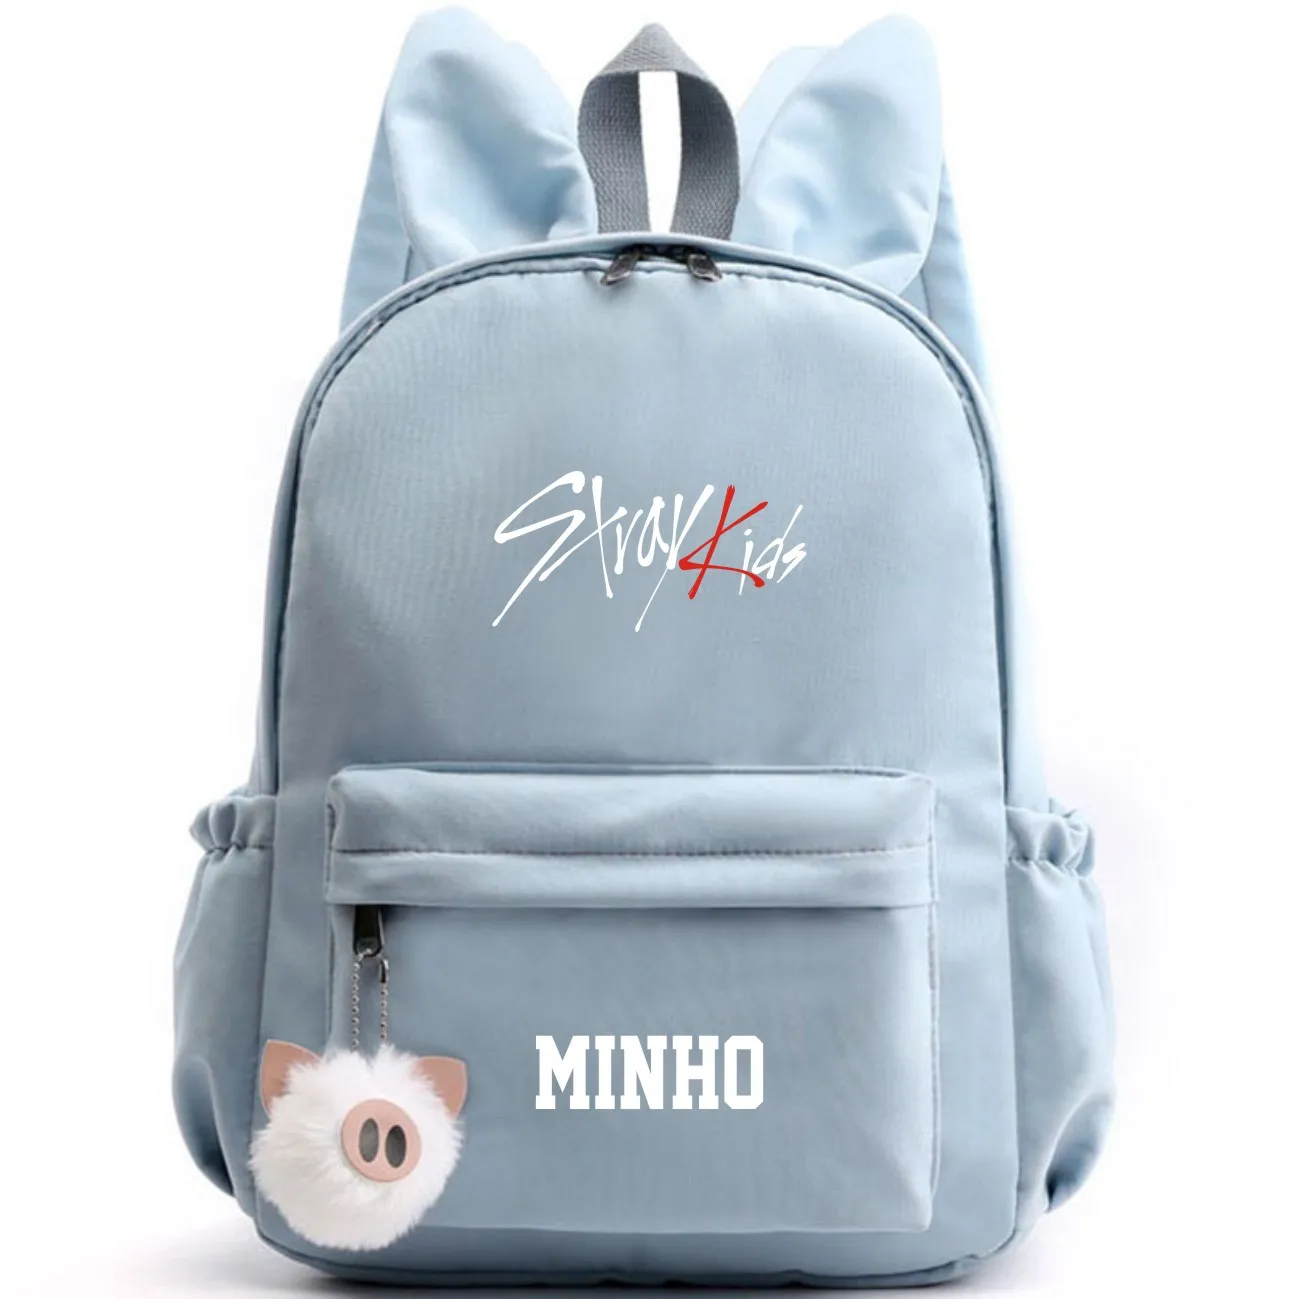 Kpop рюкзак для детей с милыми заячьими ушками, школьный рюкзак, школьный рюкзак, Набор детских канцелярских принадлежностей, Новое поступление - Цвет: Blue MINHO